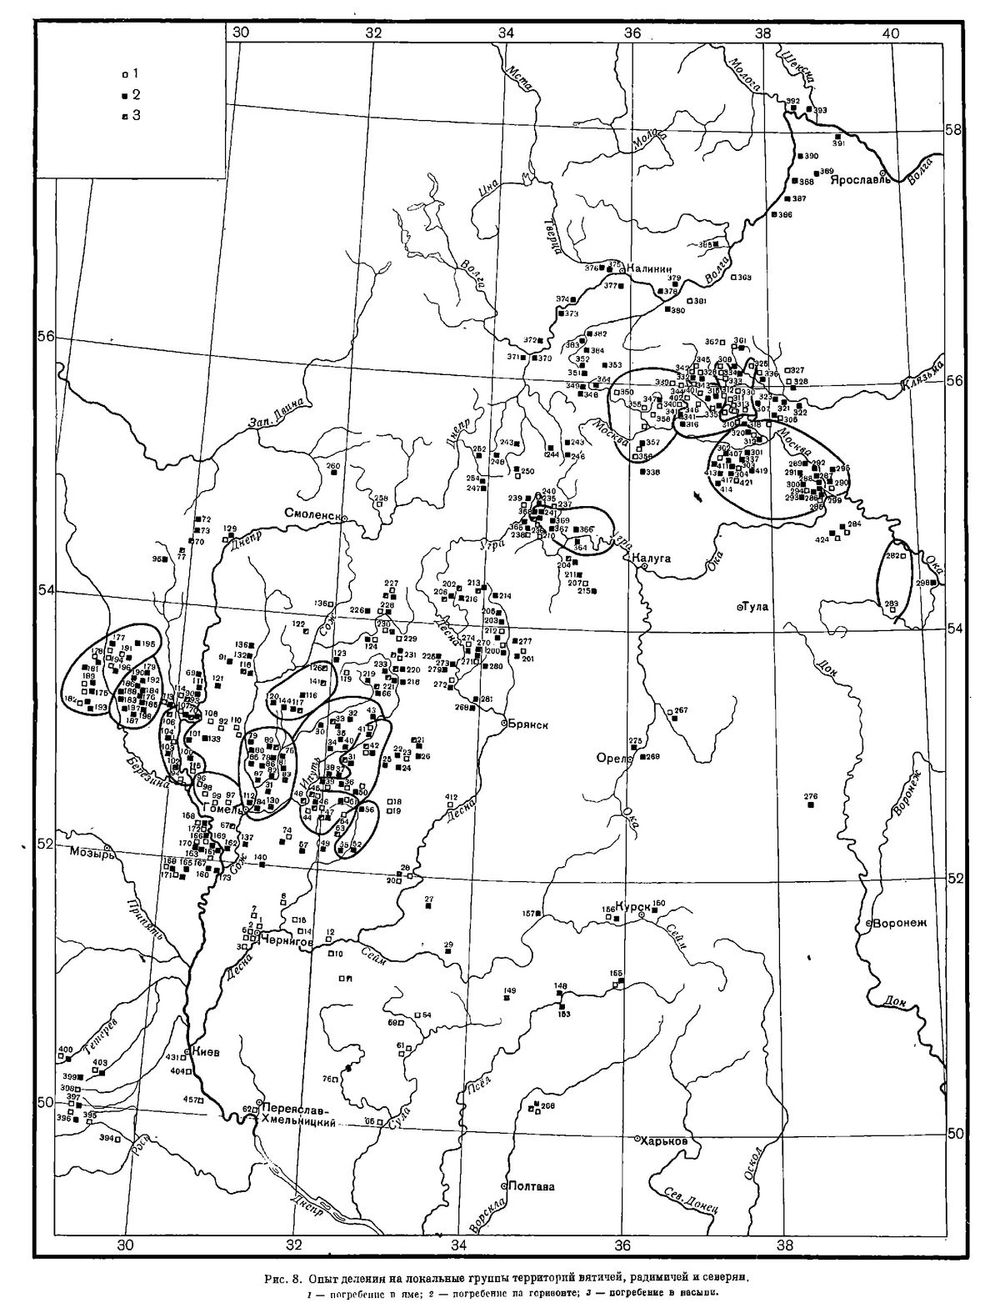 Рис. 3. Локальные группы вятичей, радимичей и северян (Соловьёва 1956: рисунок между страницами 156-157)